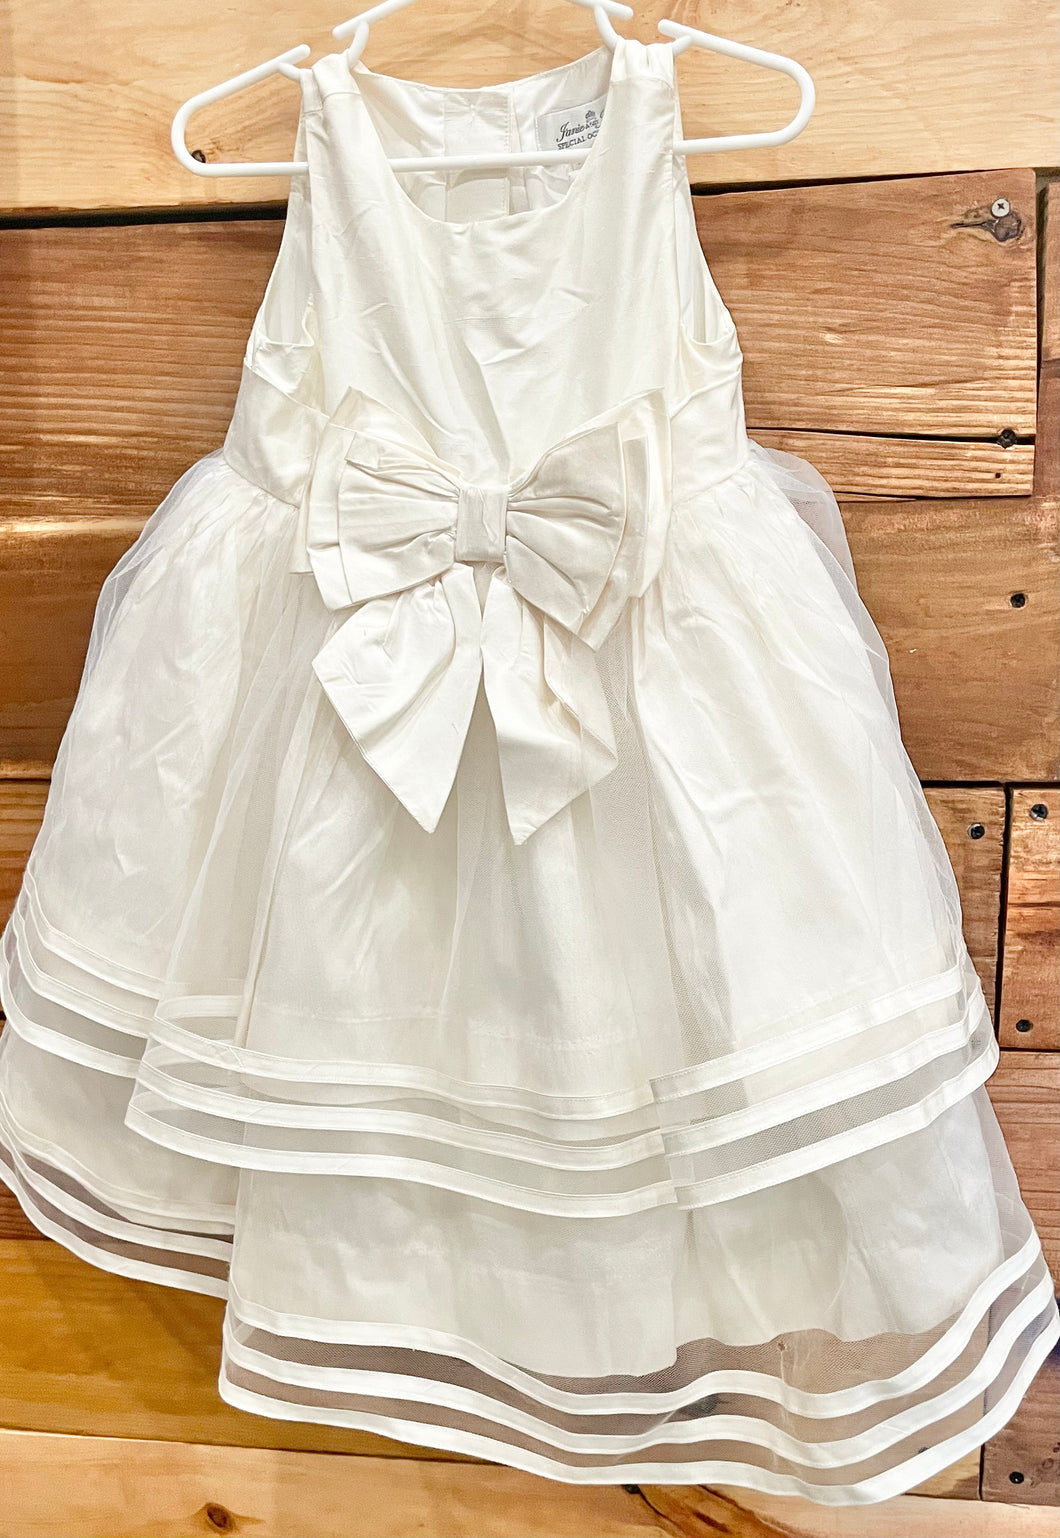 Janie & Jack Special Occasion White Dress Size 2T